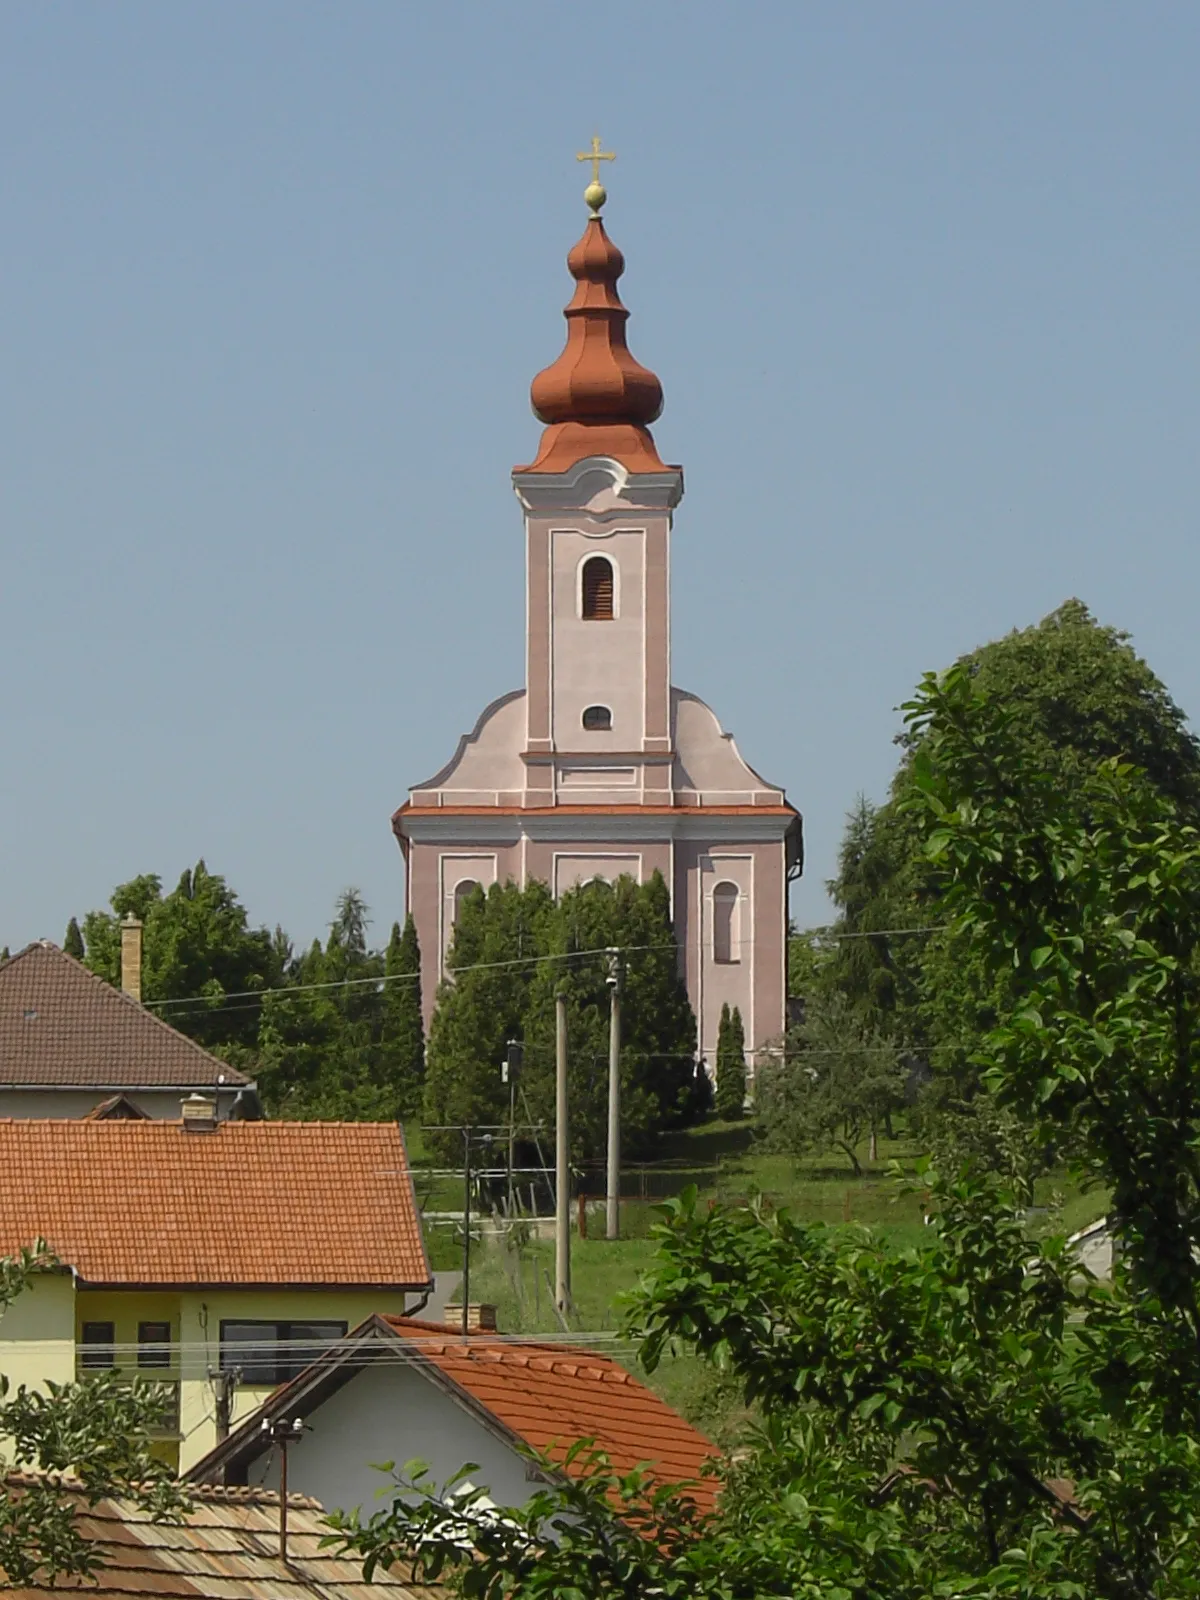 Photo showing: Beschreibung: Kirche von Csáb

eigenes Foto von User:Ralf 69
Datum:11.06.2006